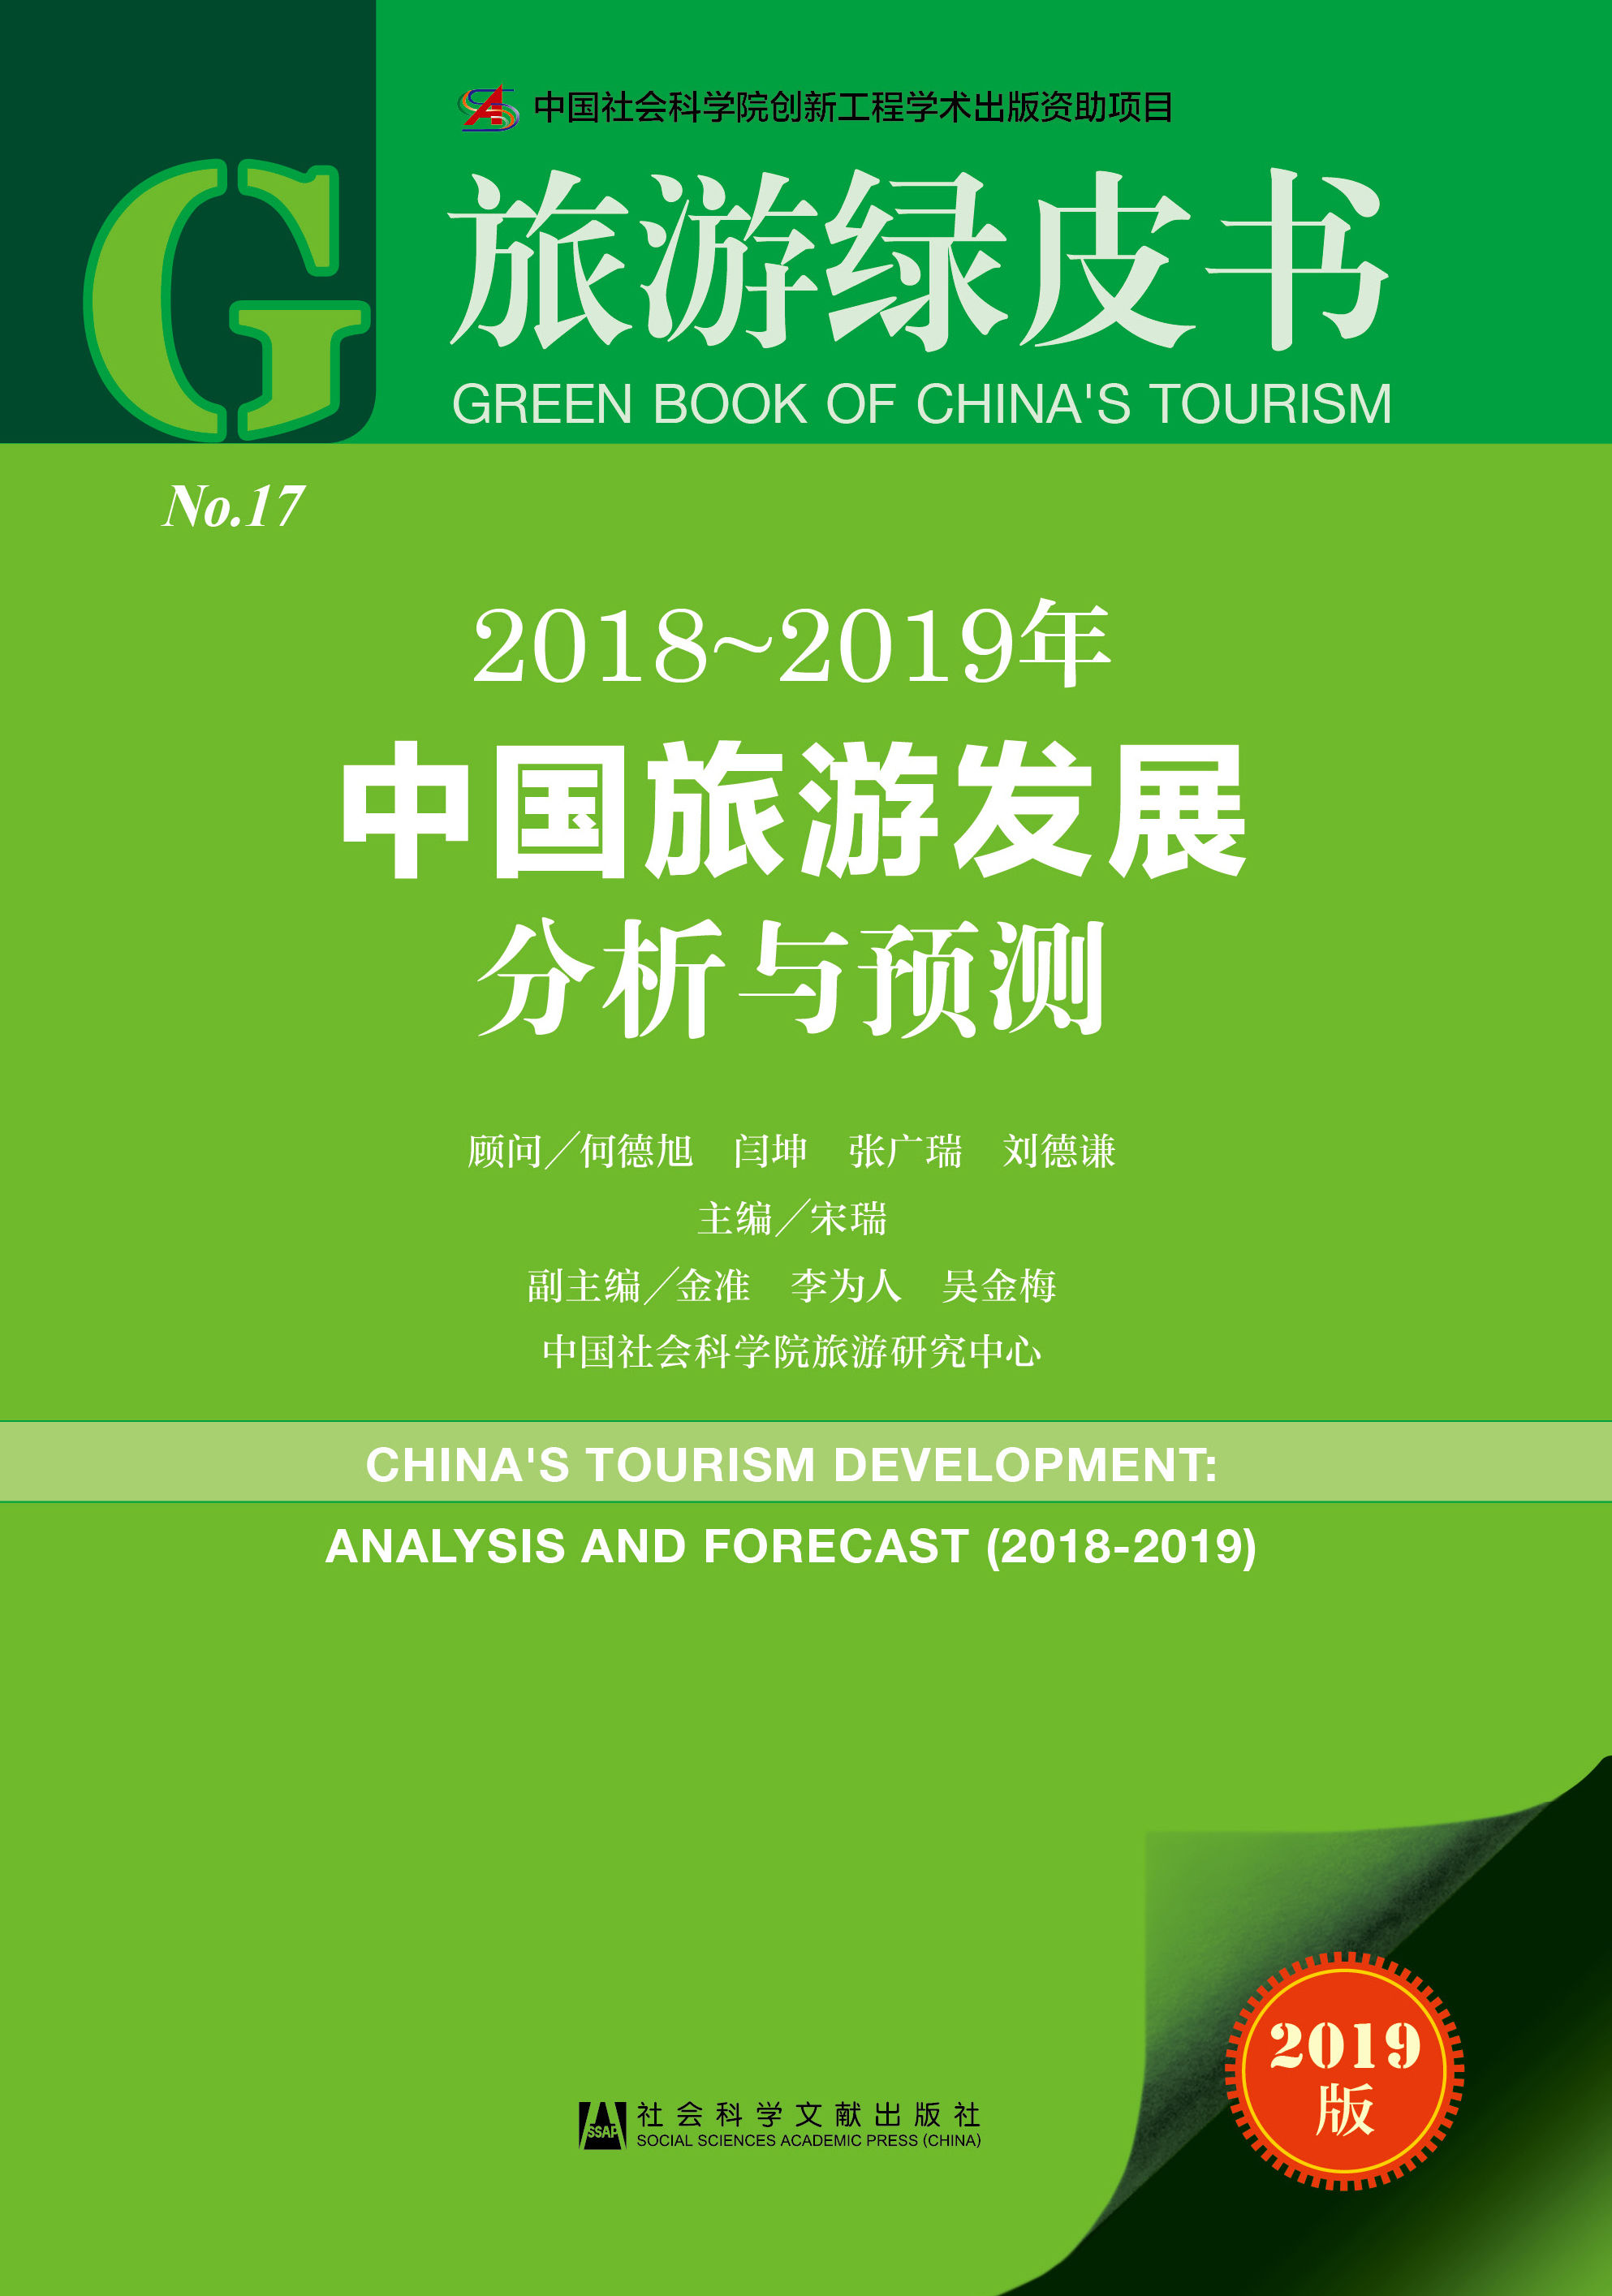 《2018-2019年中国旅游发展分析与预测》